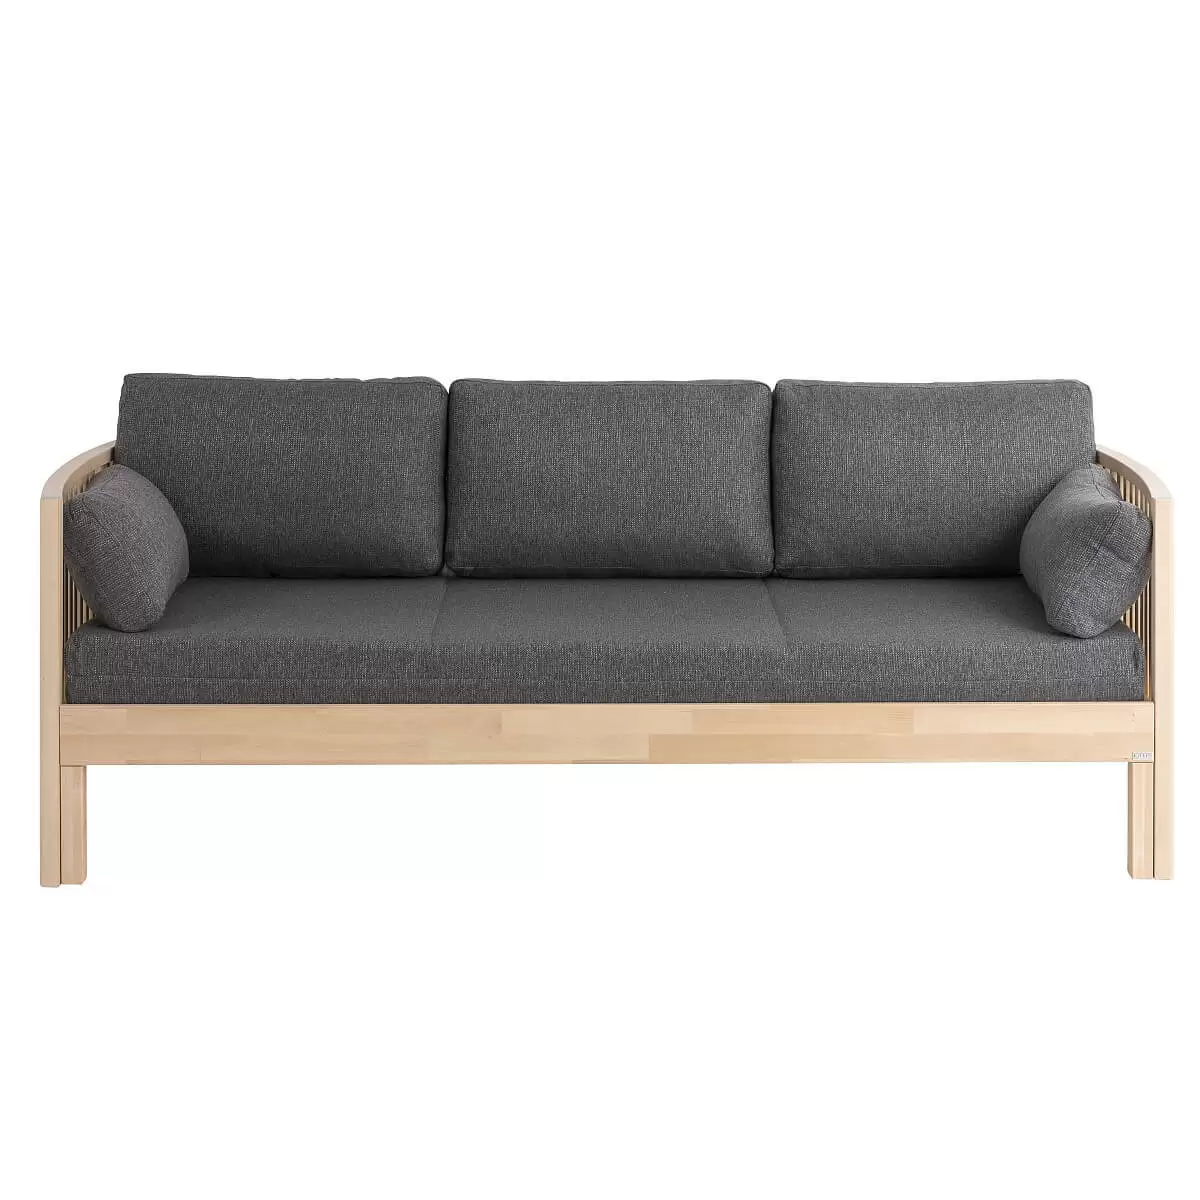 Designerska sofa AARRE rozkładana z drewna brzozy skandynawskiej, z szarym materacem i 5 poduszkami. Nowoczesne minimalistyczne wzornictwo. Widok od przodu